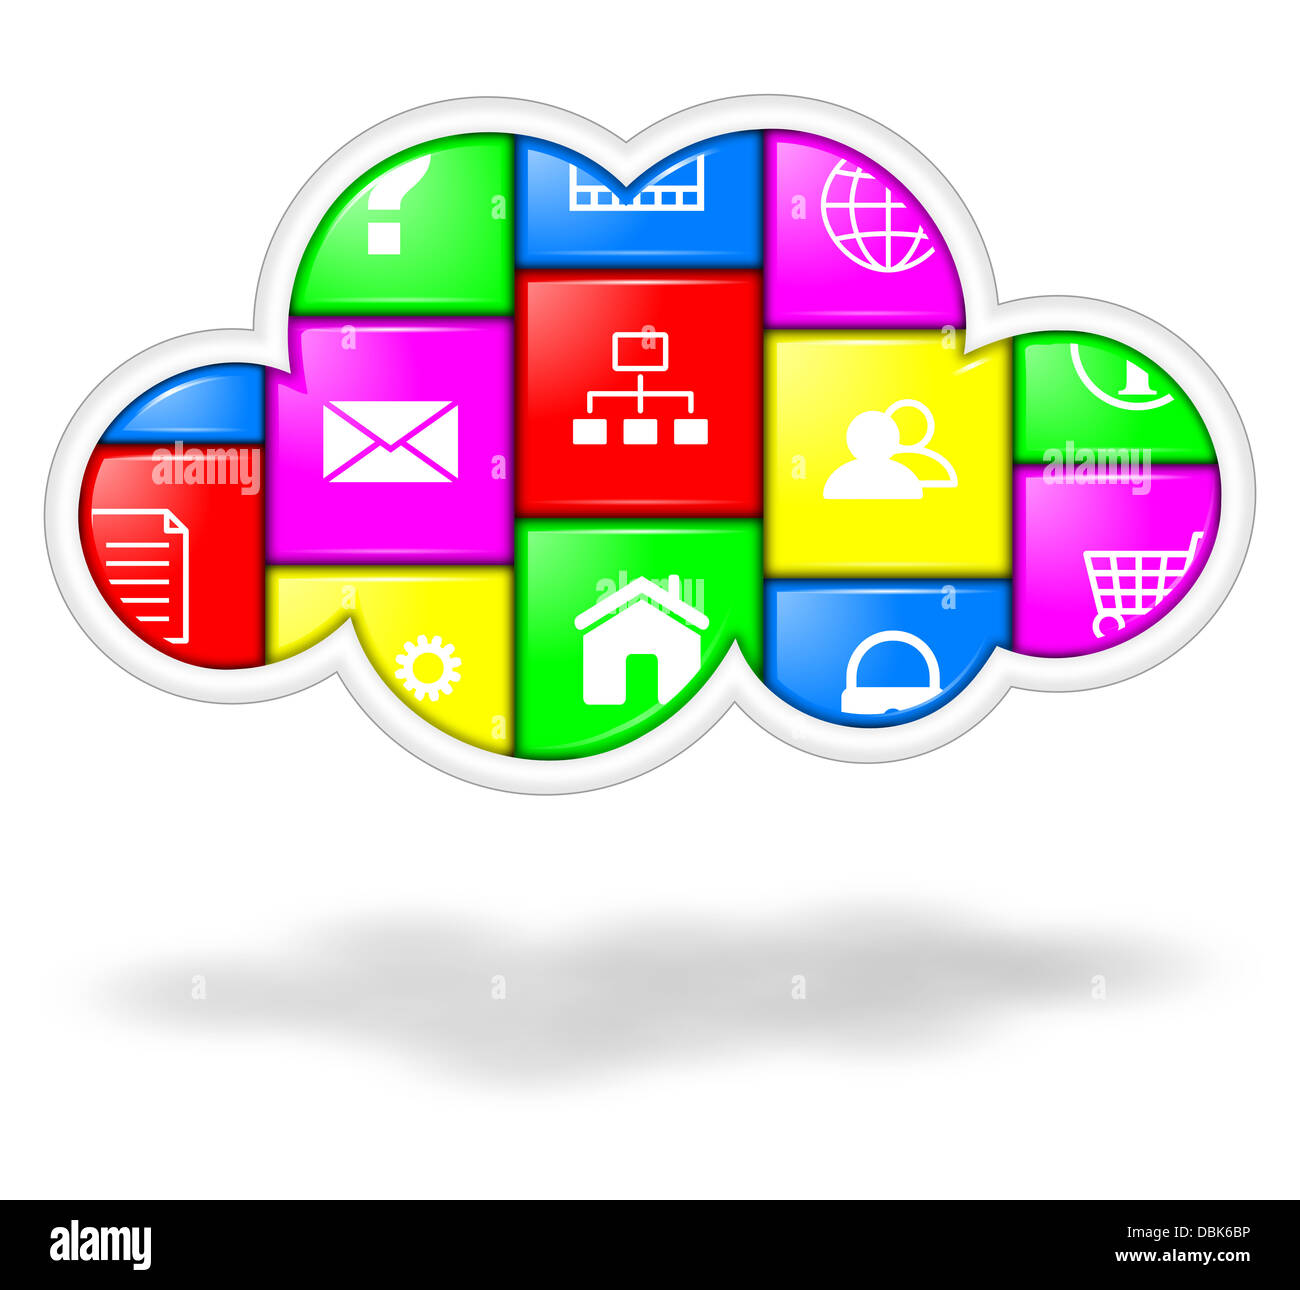 Cloud colorato con i pulsanti delle applicazioni illustrazione, servizi cloud computing concept Foto Stock